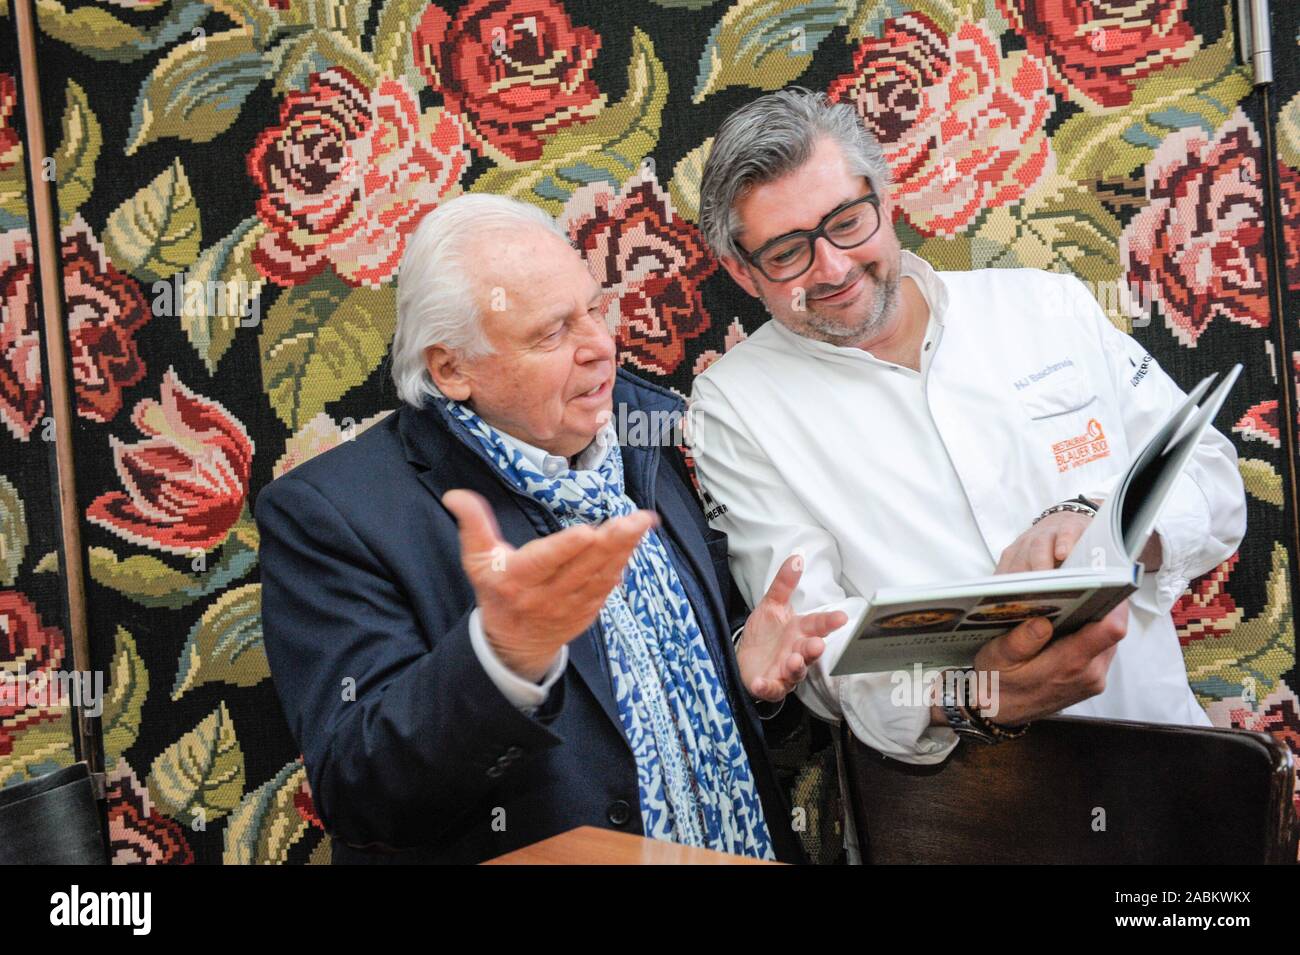 Plat chef et chef, Hans Jörg Bachmeier (à droite) présente son nouveau livre 'Heimat schmeckt am besten' ('Home meilleur goût') au restaurant Blauer Bock sur Munich's Reichenbachstraße 13. Star chef Eckart Witzigmann (l.) est également présente. [Traduction automatique] Banque D'Images